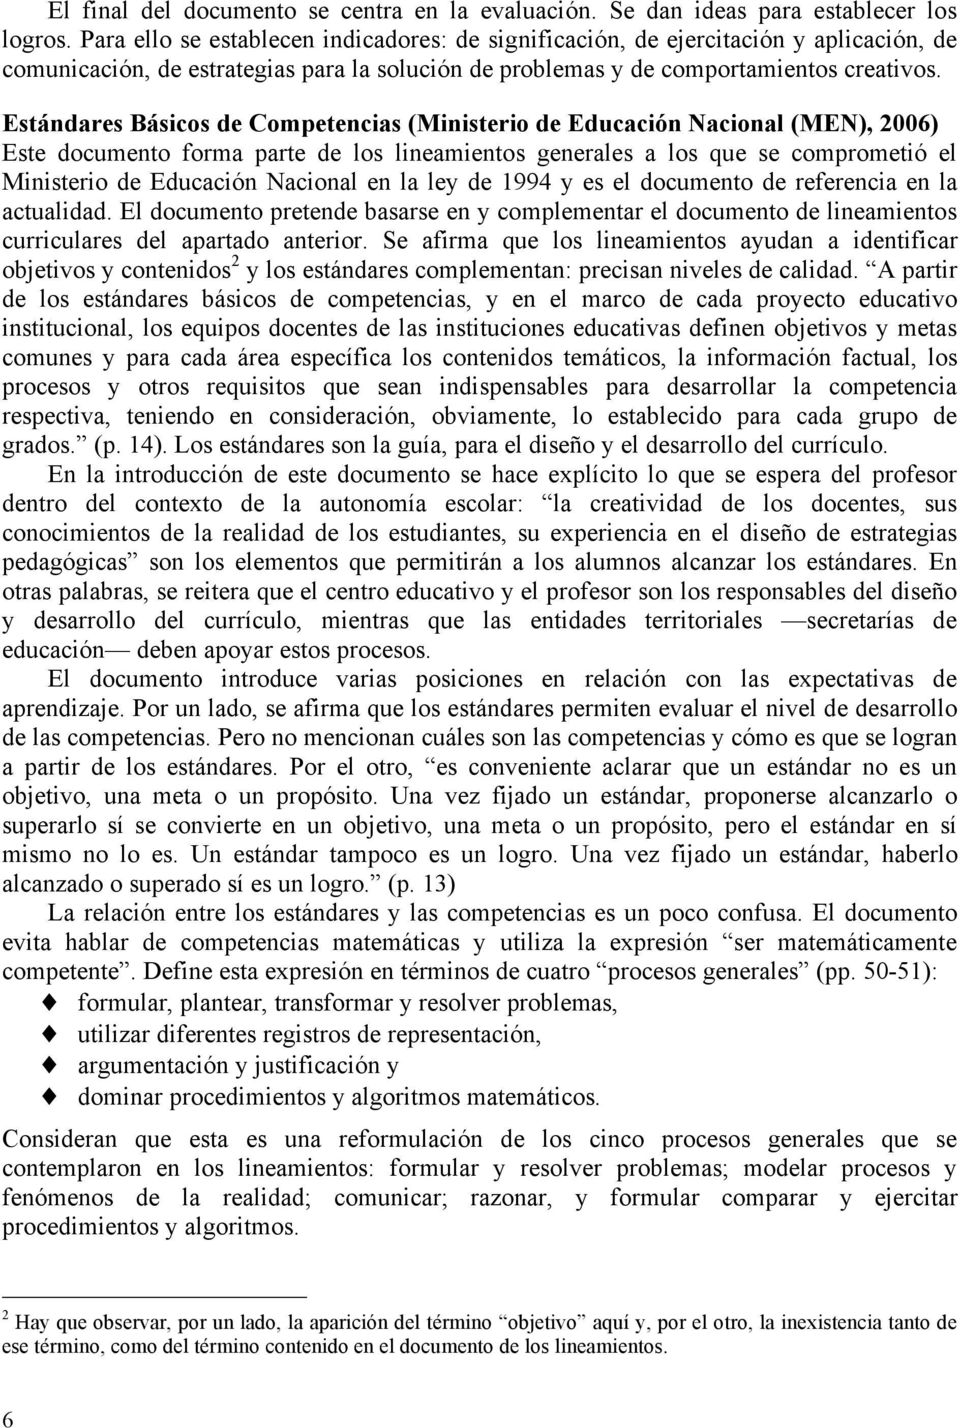 Estándares Básicos de Competencias (Ministerio de Educación Nacional (MEN), 2006) Este documento forma parte de los lineamientos generales a los que se comprometió el Ministerio de Educación Nacional